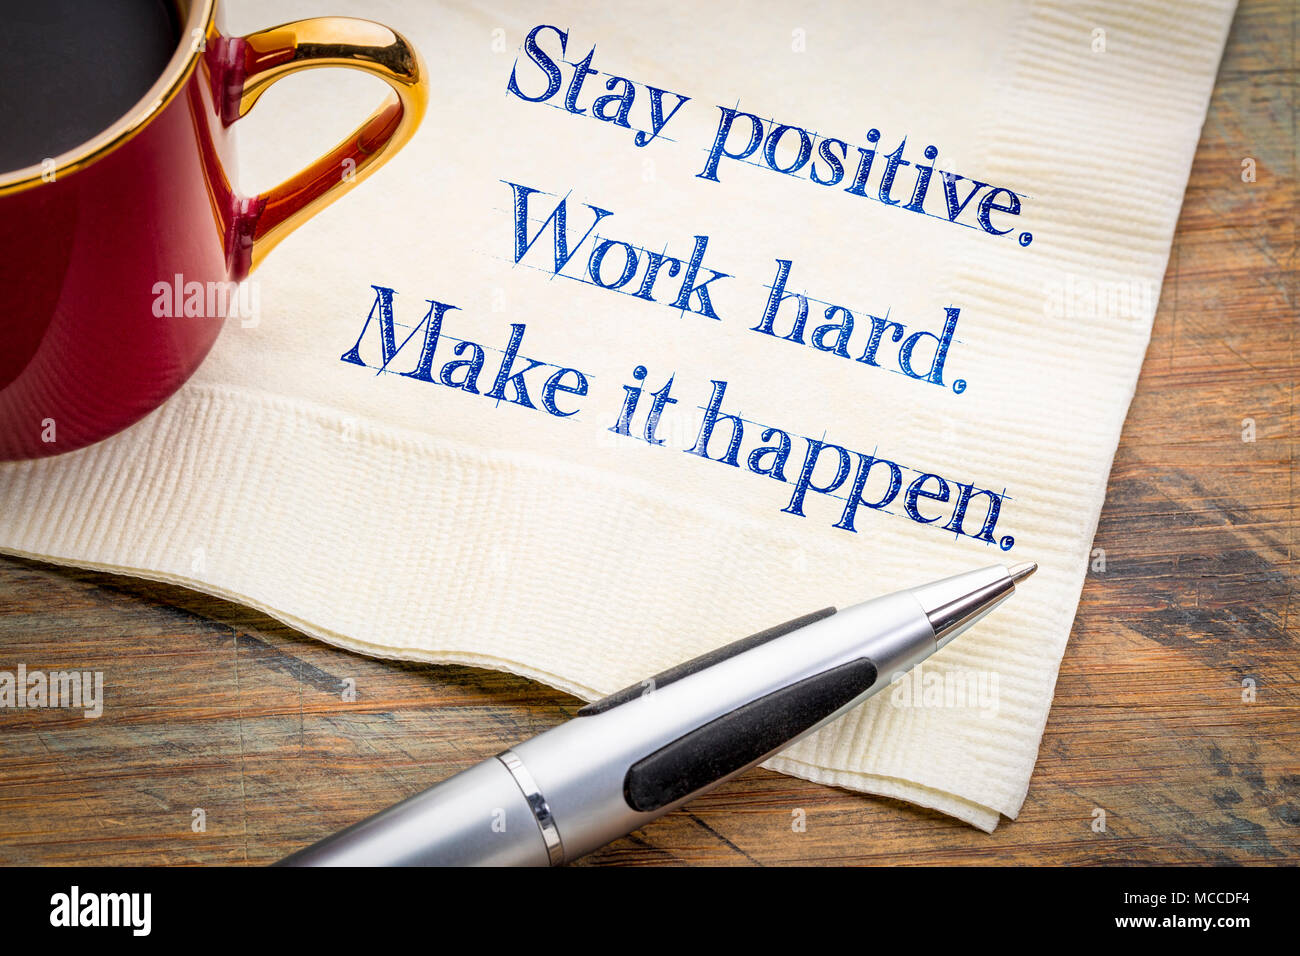 Mantener una actitud positiva. Trabajar duro. Hacer que suceda. Inspirador de la escritura a mano en una servilleta. Foto de stock